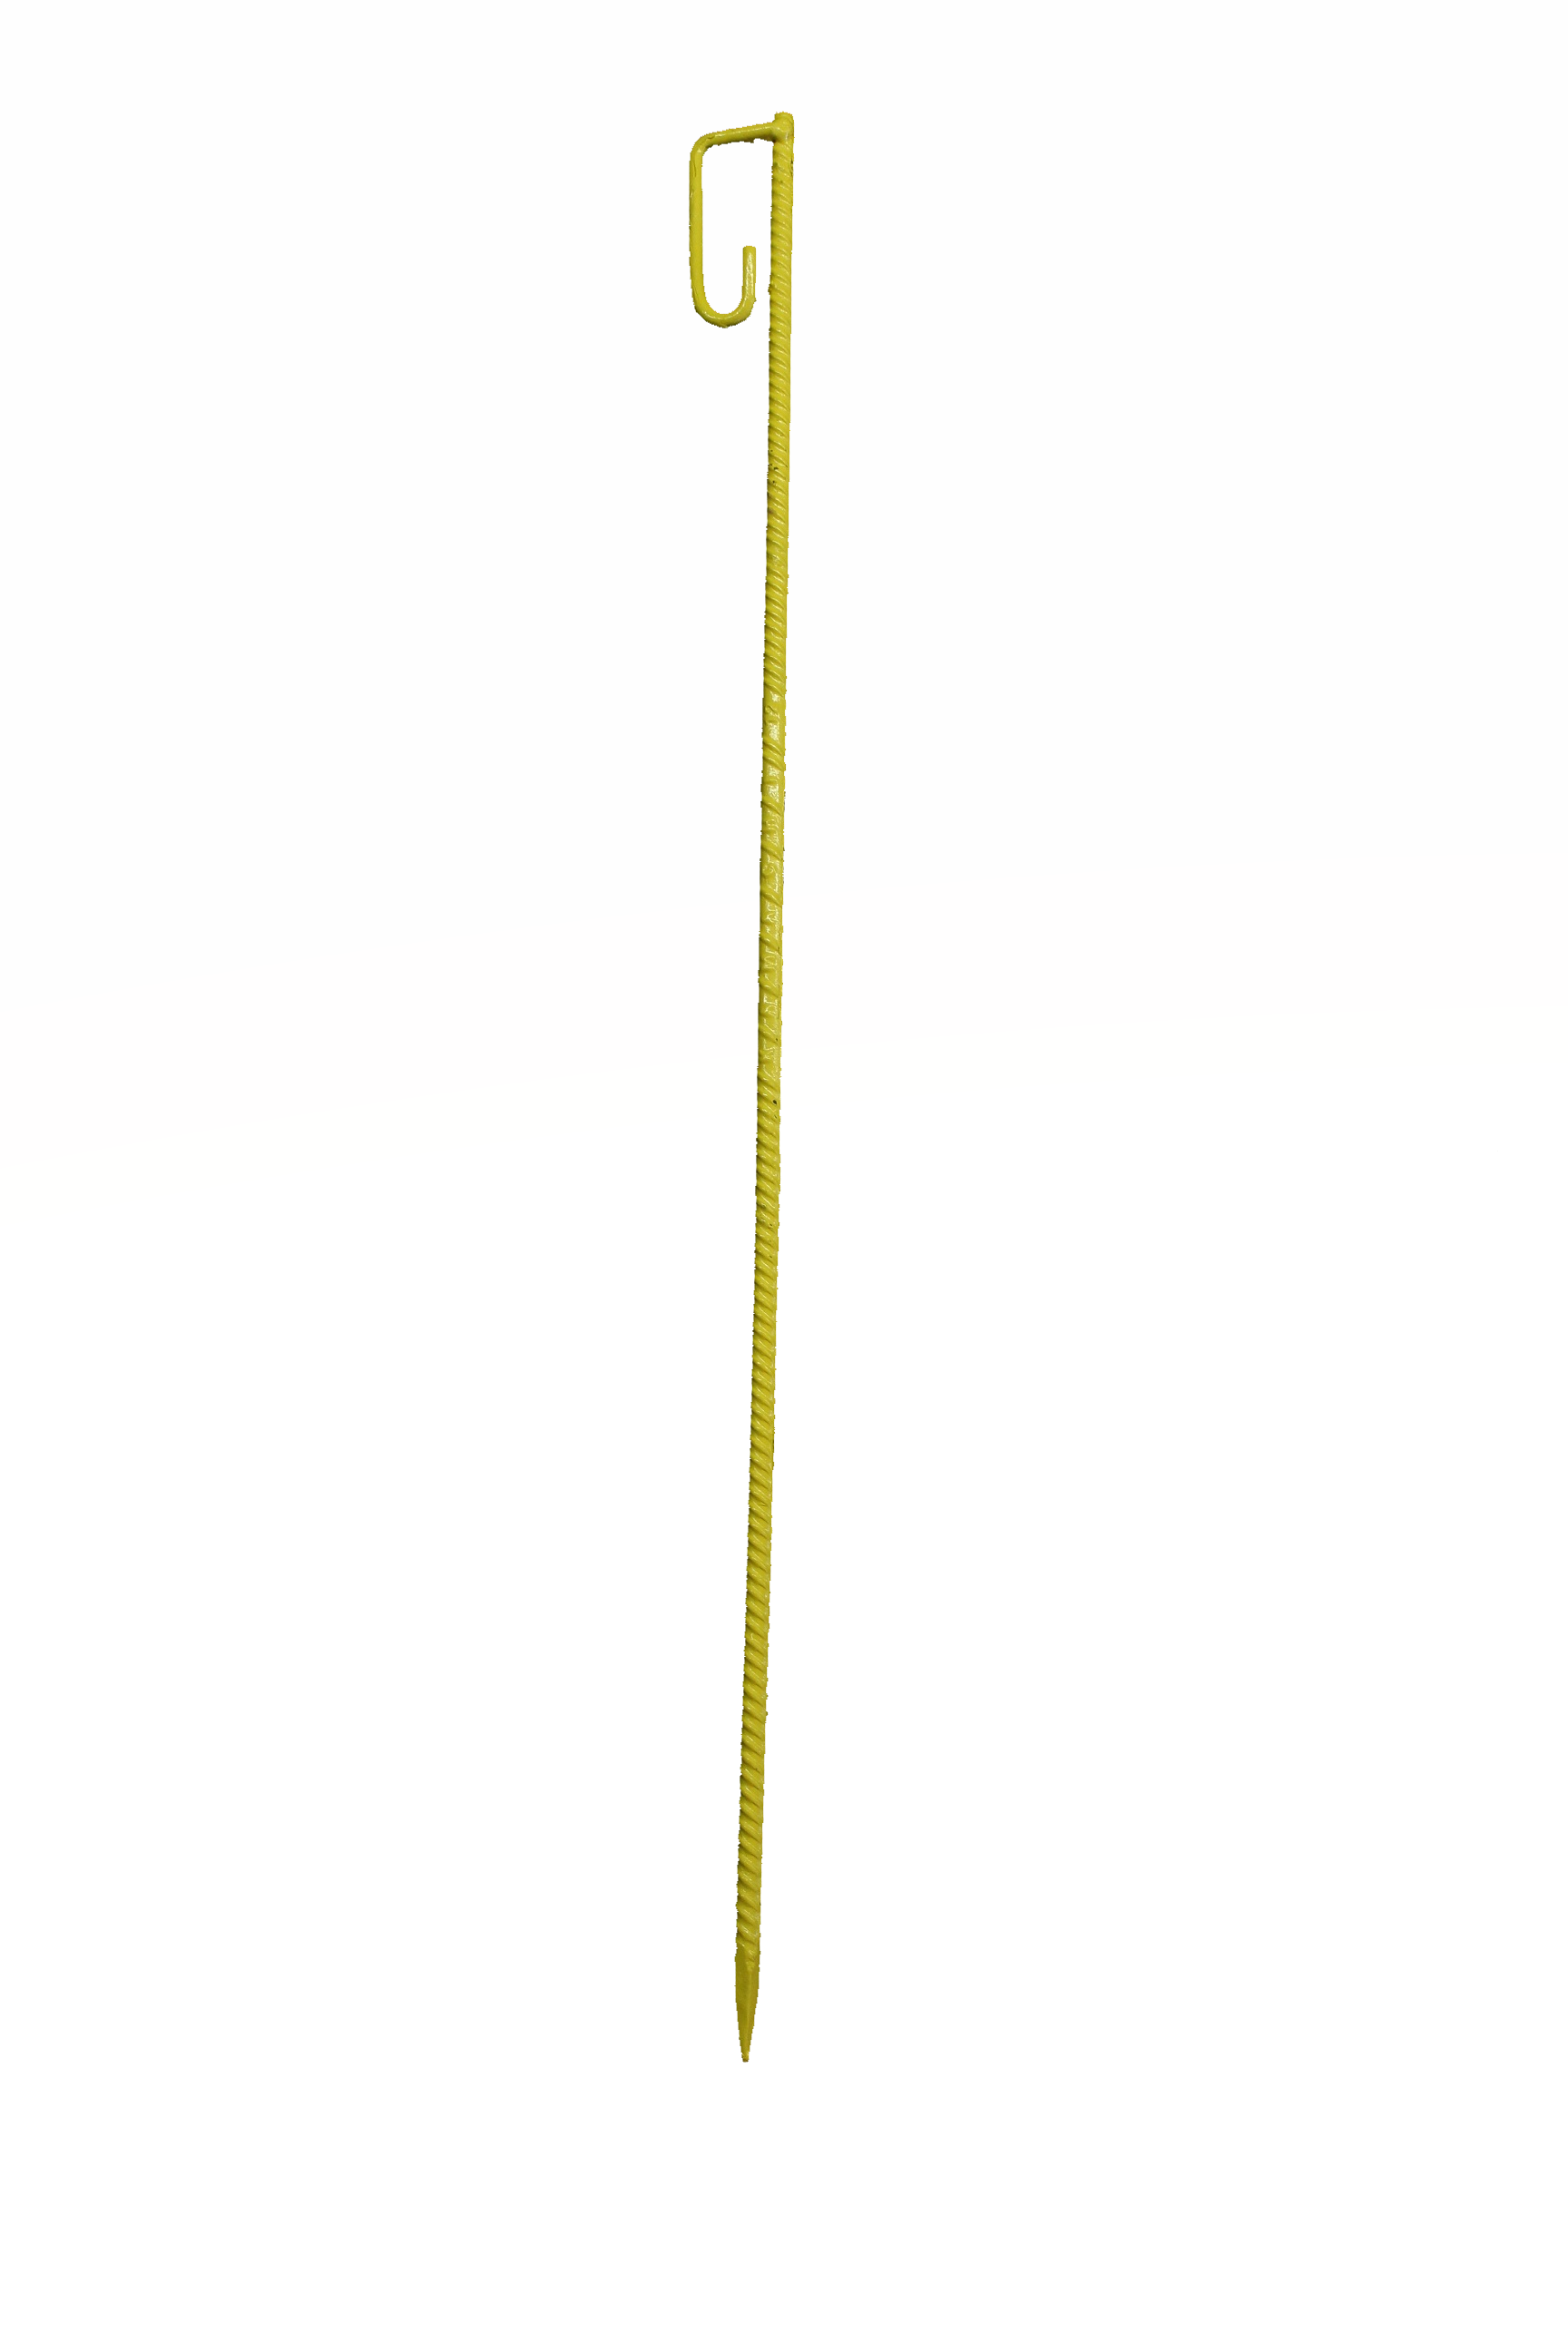 Zauneisen 110cm 